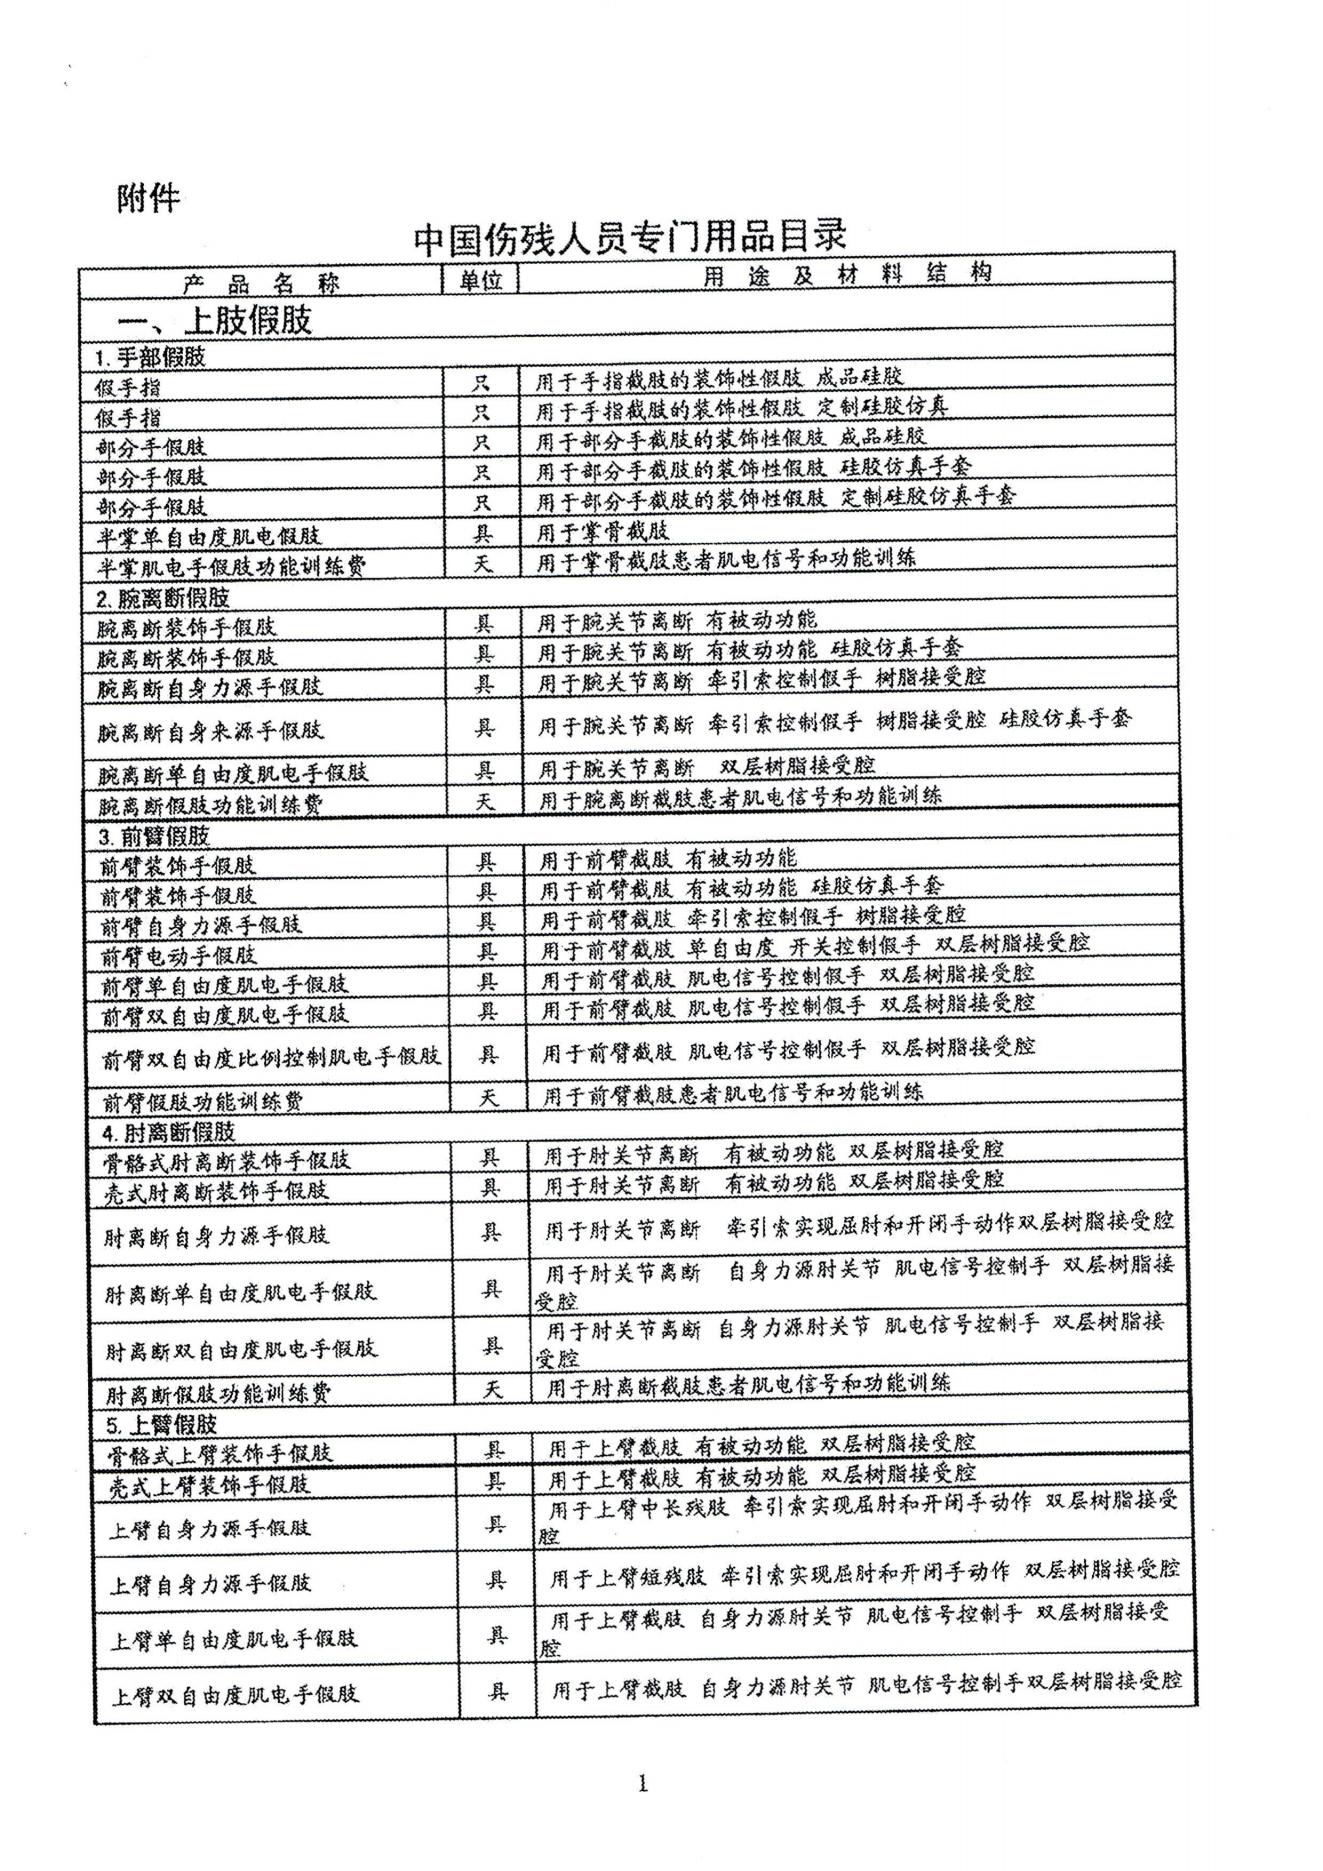 中国伤残人员专门用品目录_00.jpg